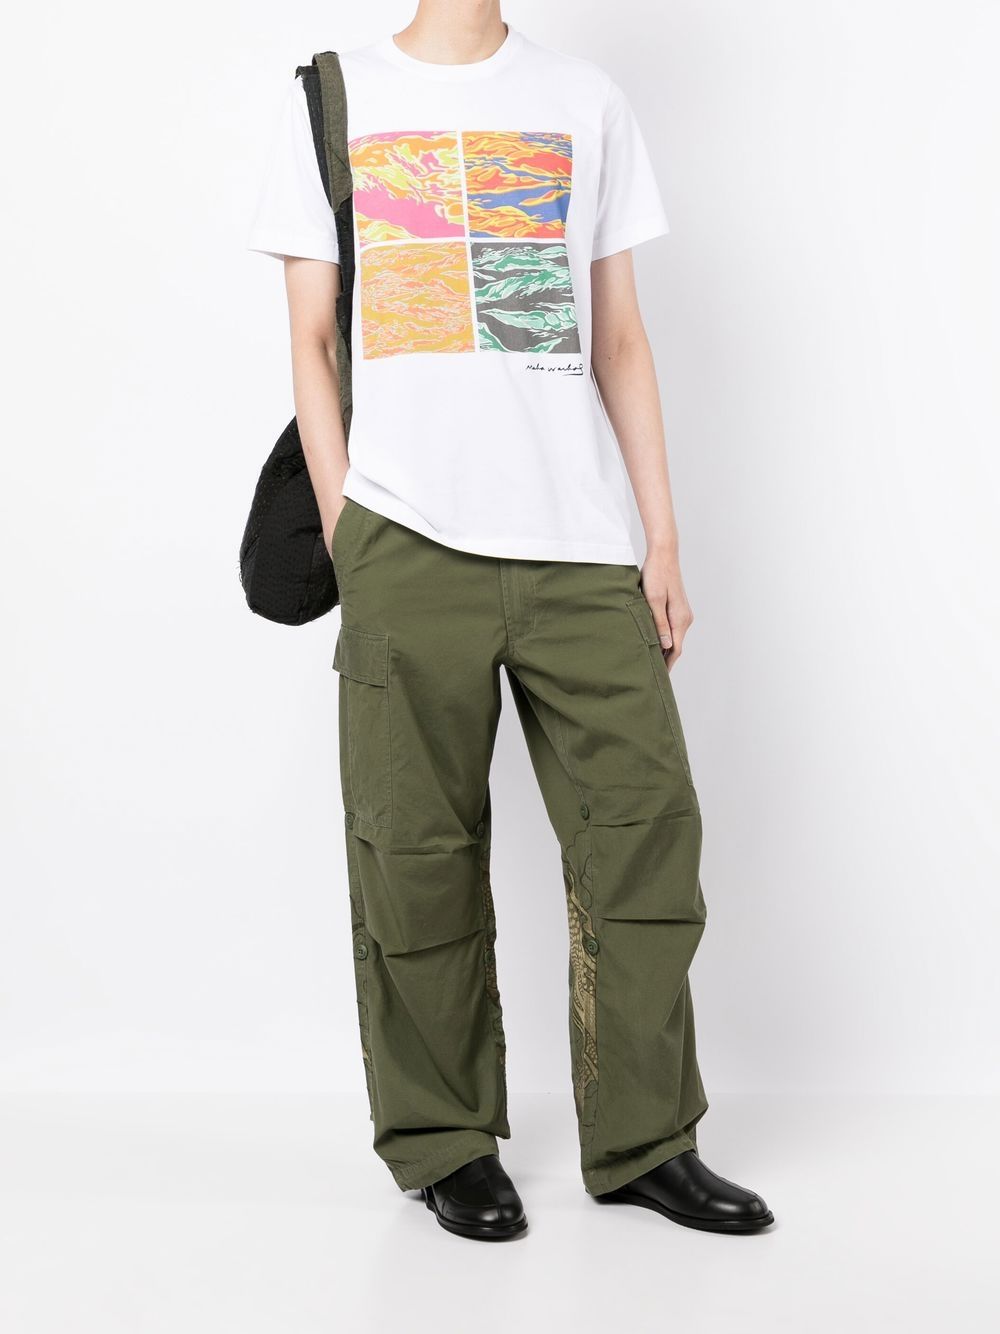 Maharishi Warhol DPM Series 3 T-shirt - Wit